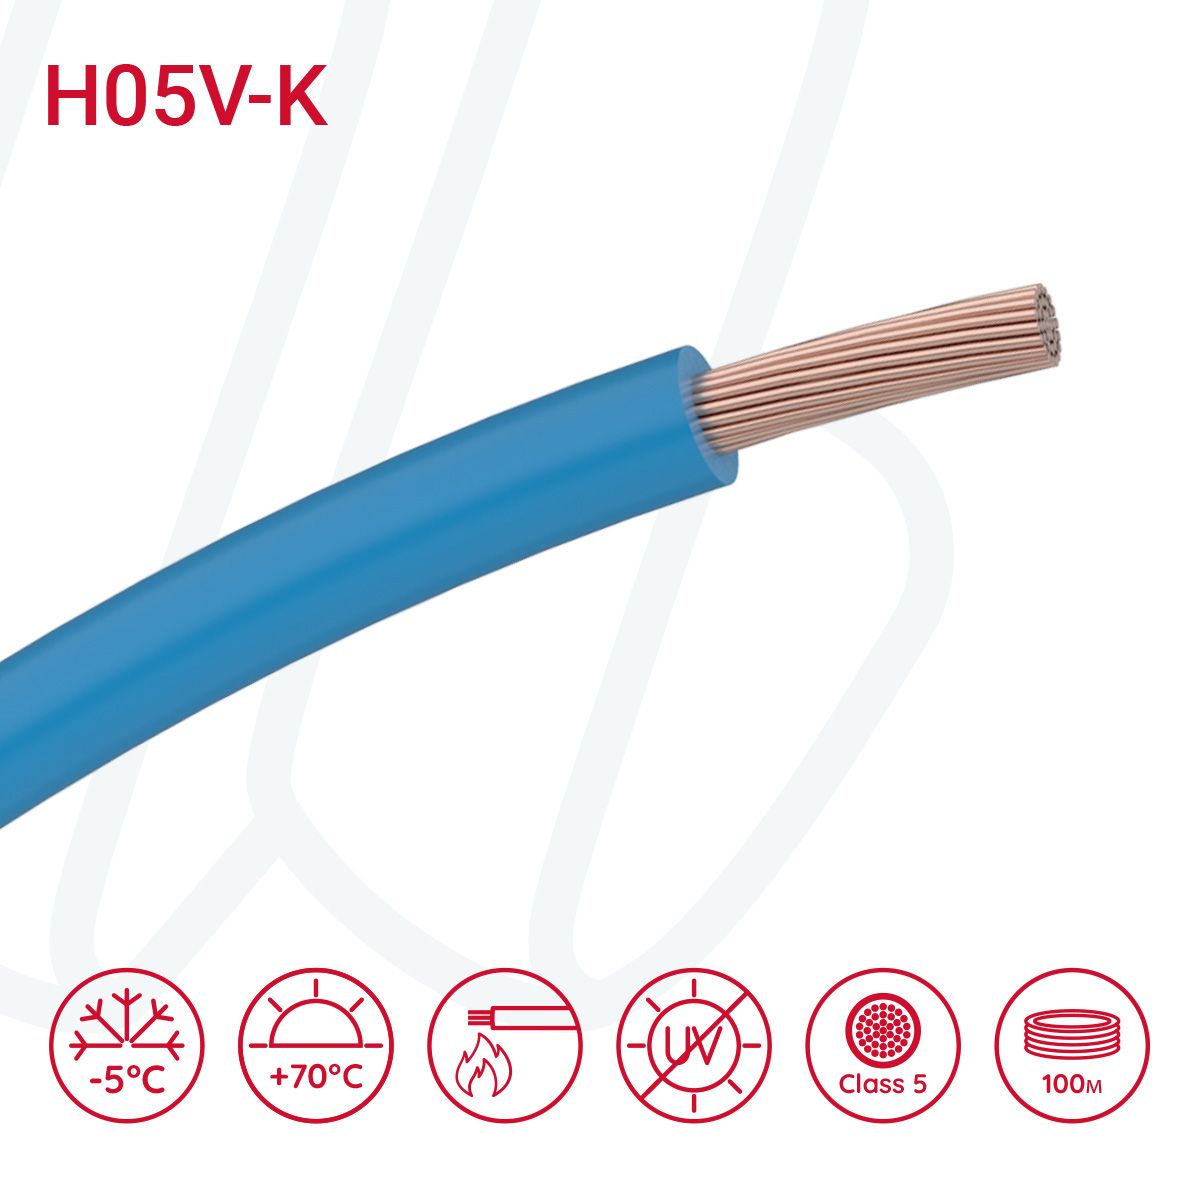 Провід монтажний гнучкий H05V-K 1 мм² блакитний RAL 5015, 01, 1.0